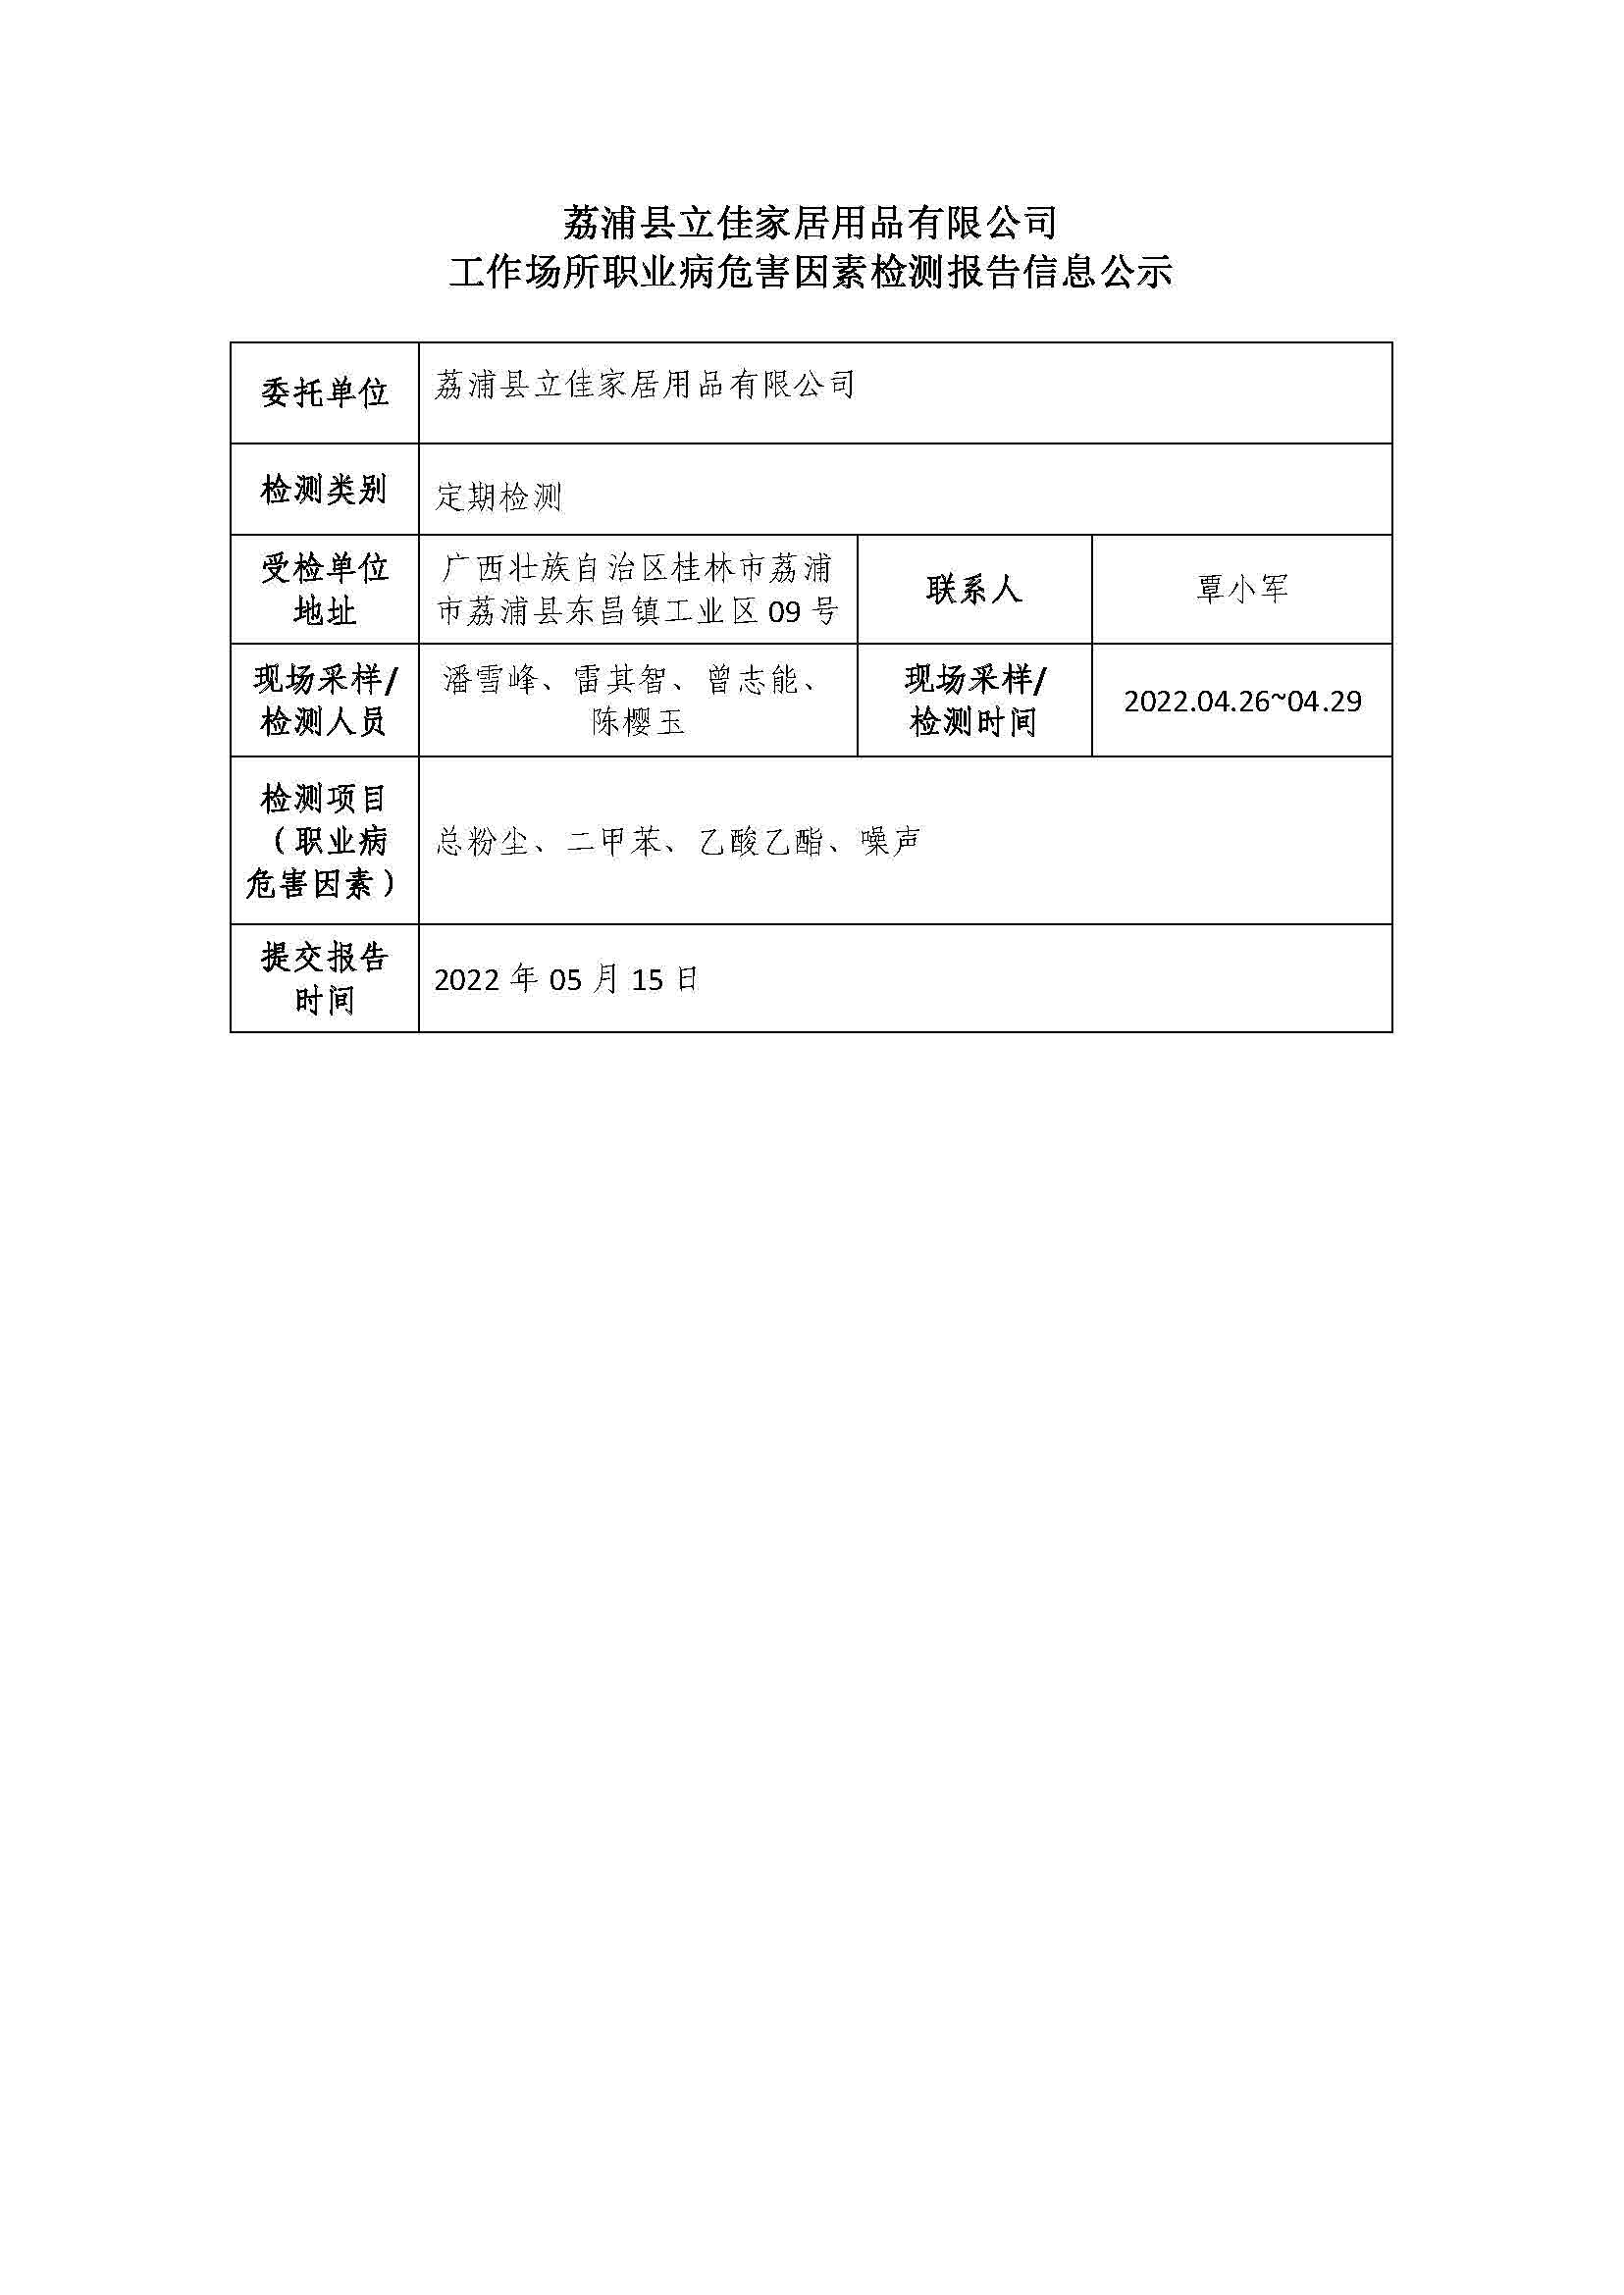 荔浦县立佳家居用品有限公司工作场所职业病危害因素检测报告信息公示